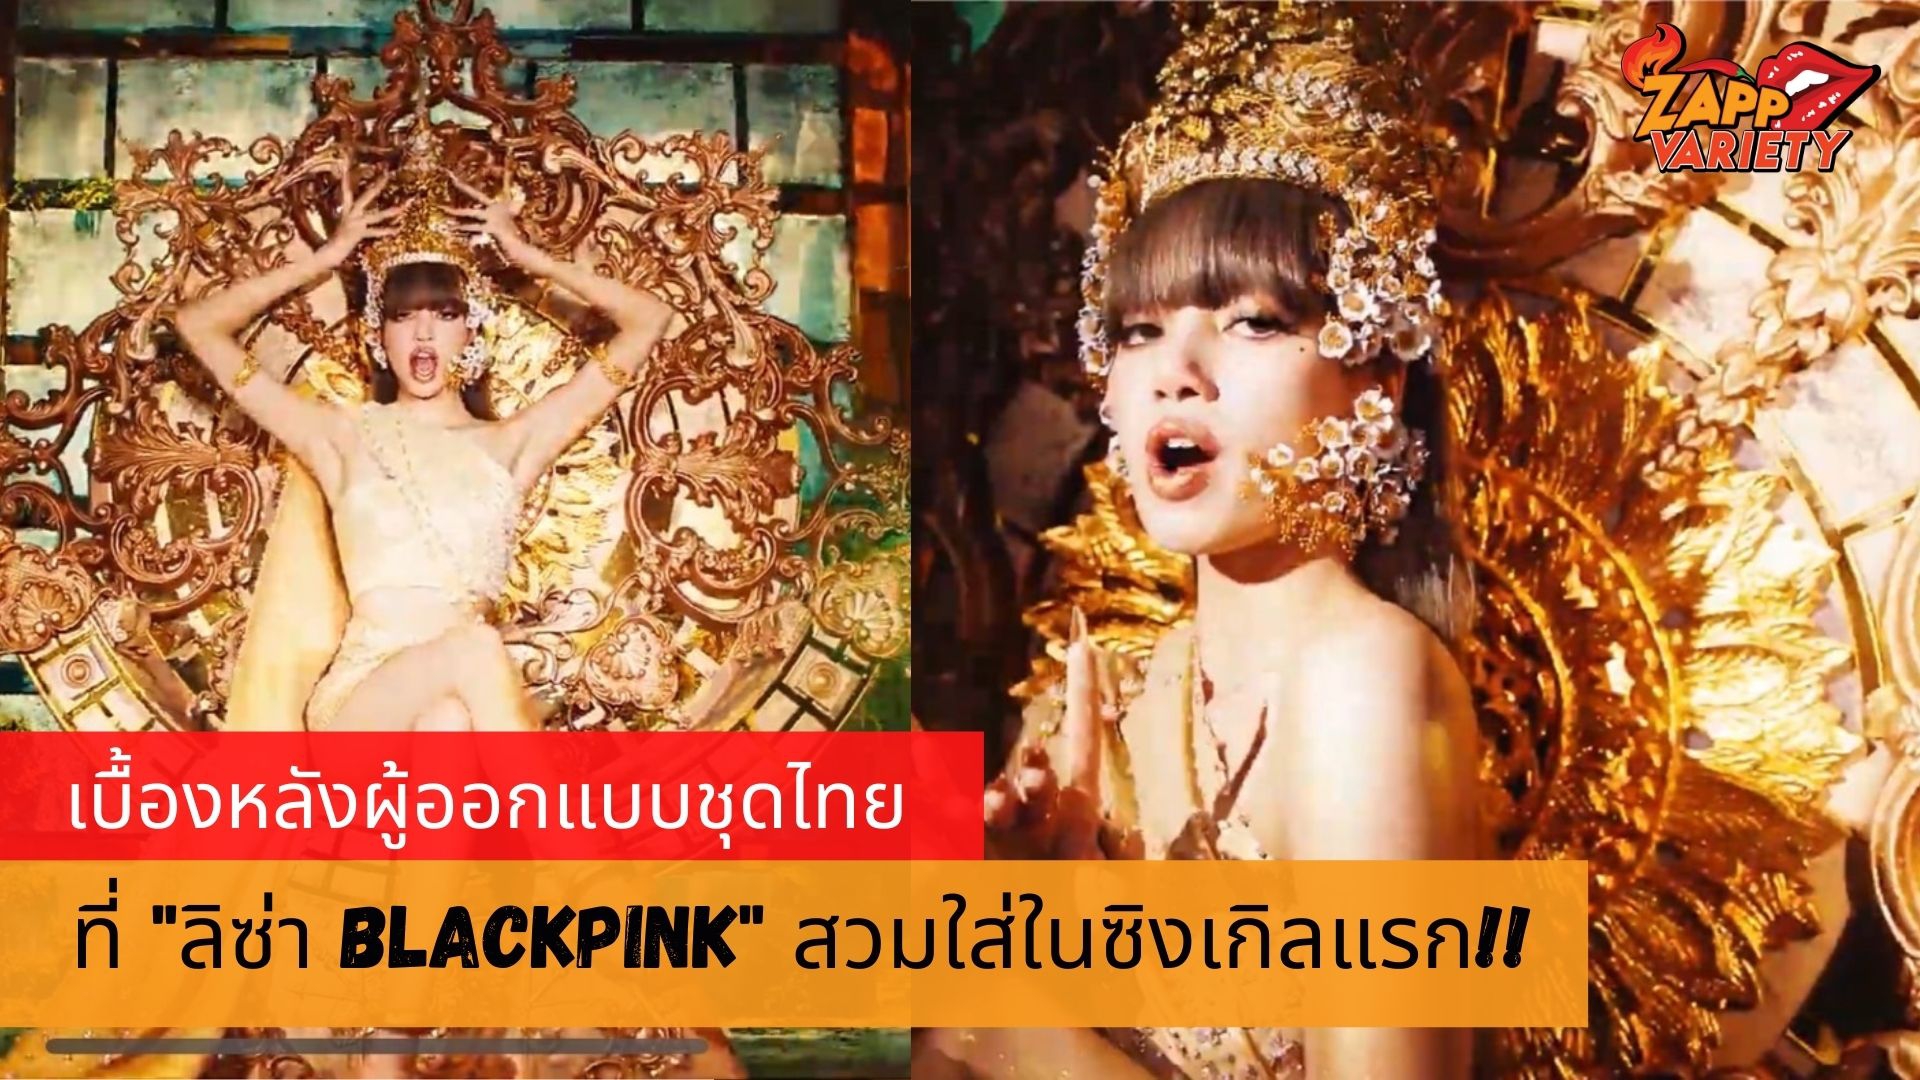 ‘ลิซ่า BLACKPINK’ สวมชุดไทยแบรนด์ดัง ASAVA ในเอ็มวีโซโล่เพลงแรกของตัวเอง